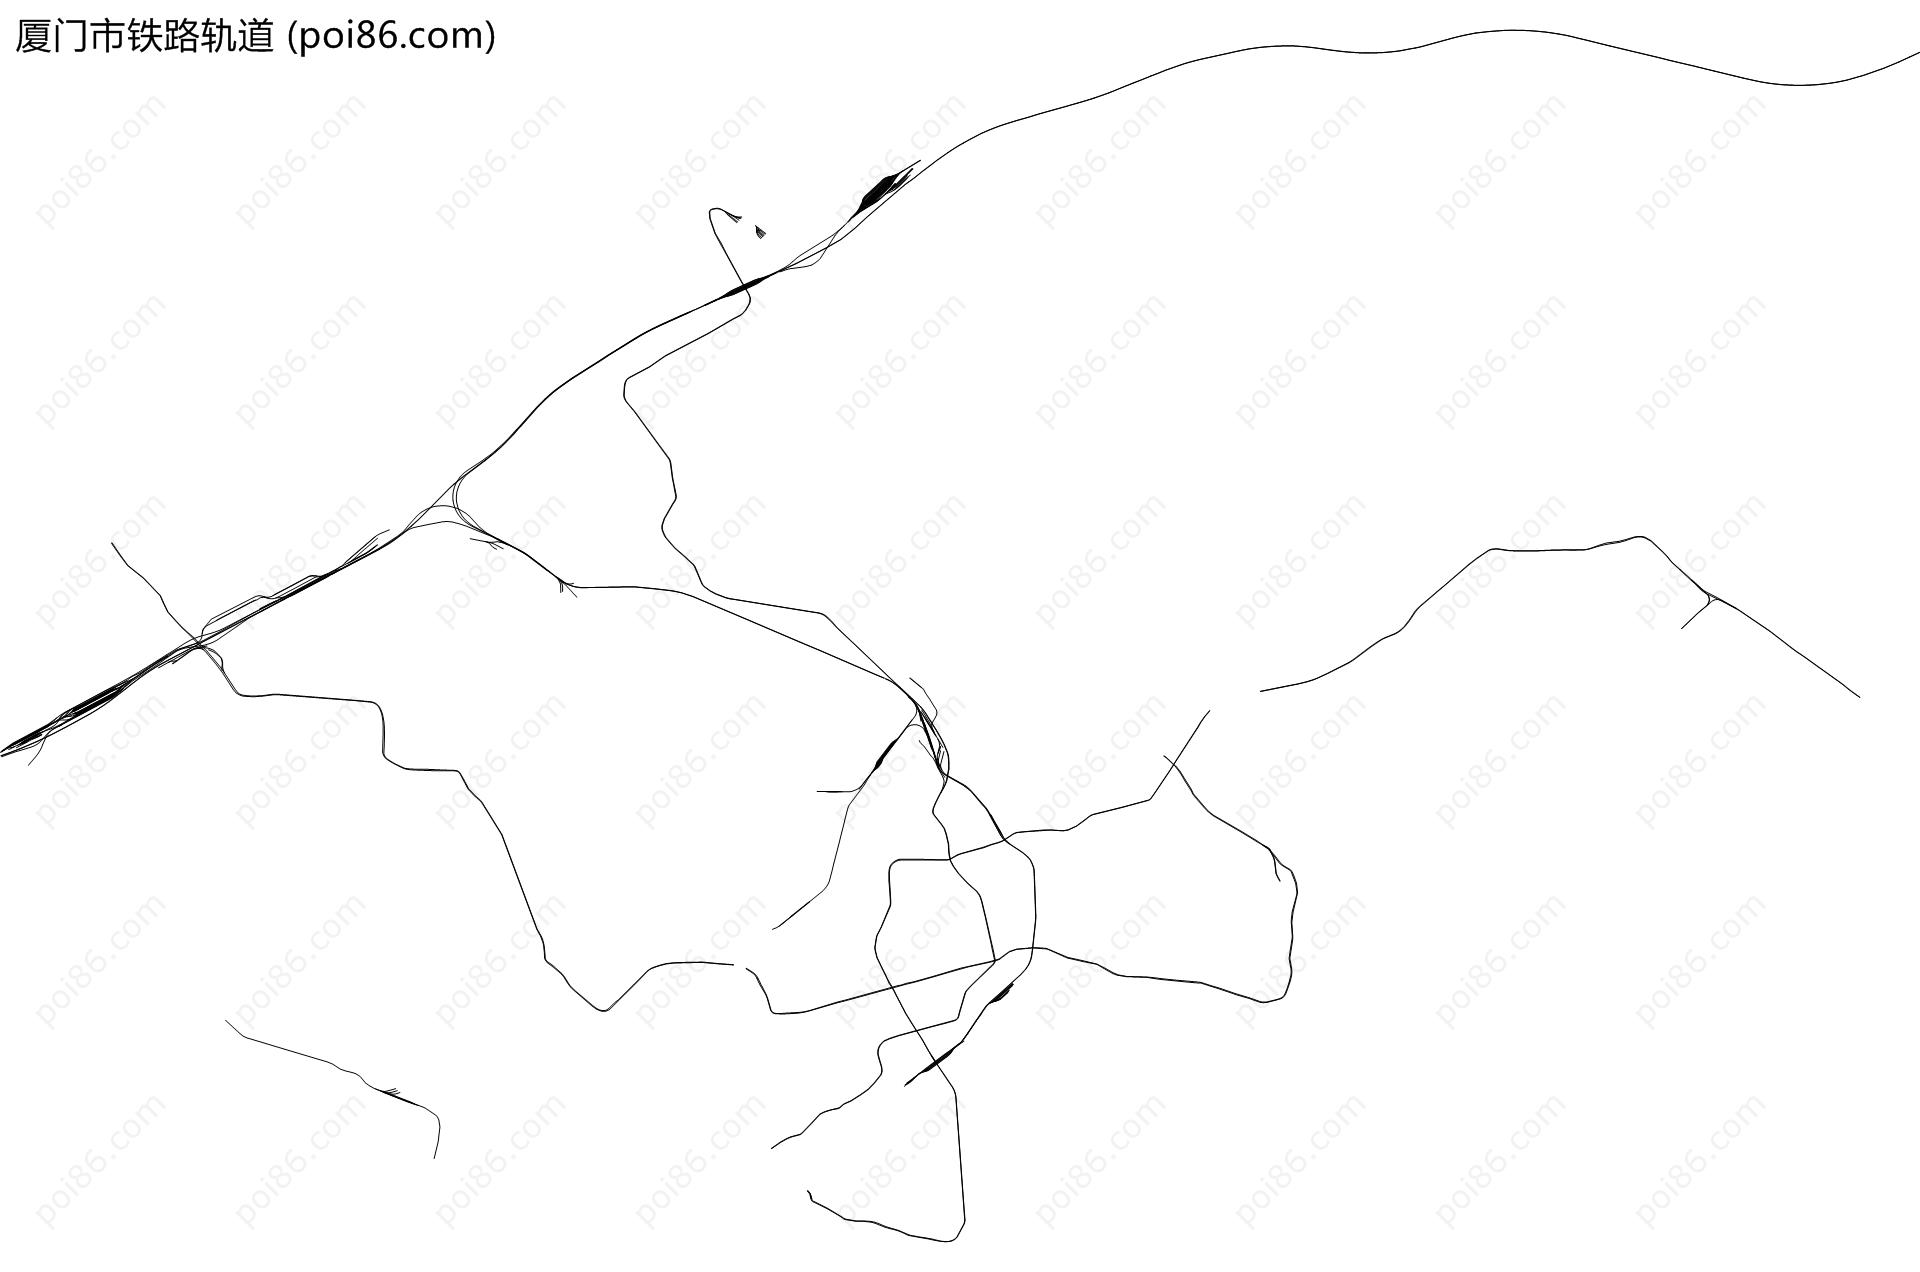 厦门市铁路轨道地图